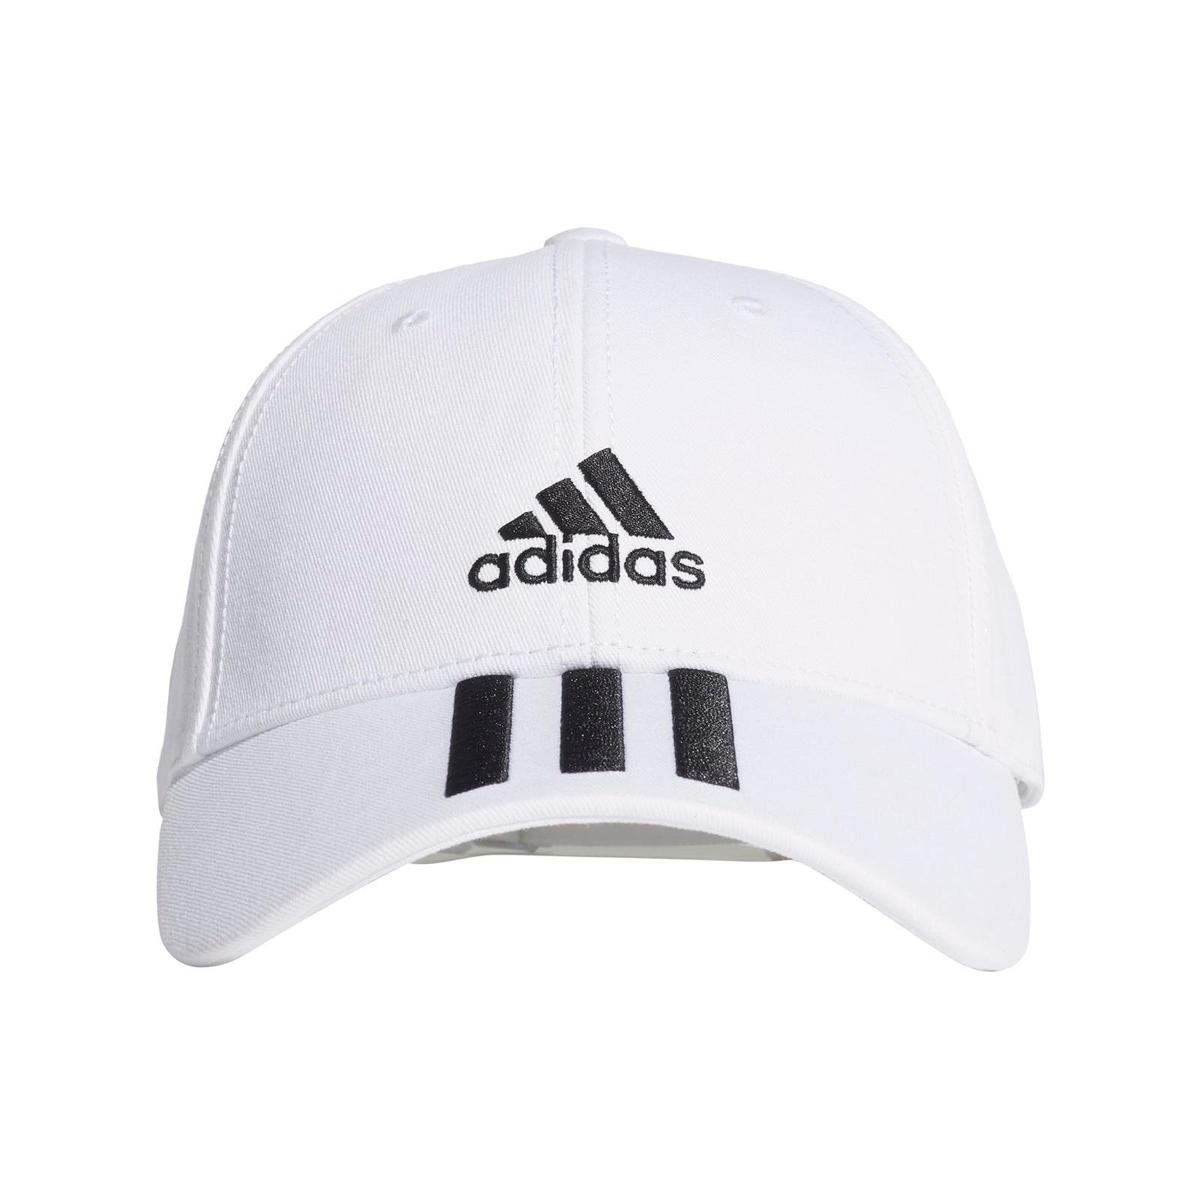 Adidas, Czapka, BBALL 3S CAP CT FQ5411, biały, rozmiar 54